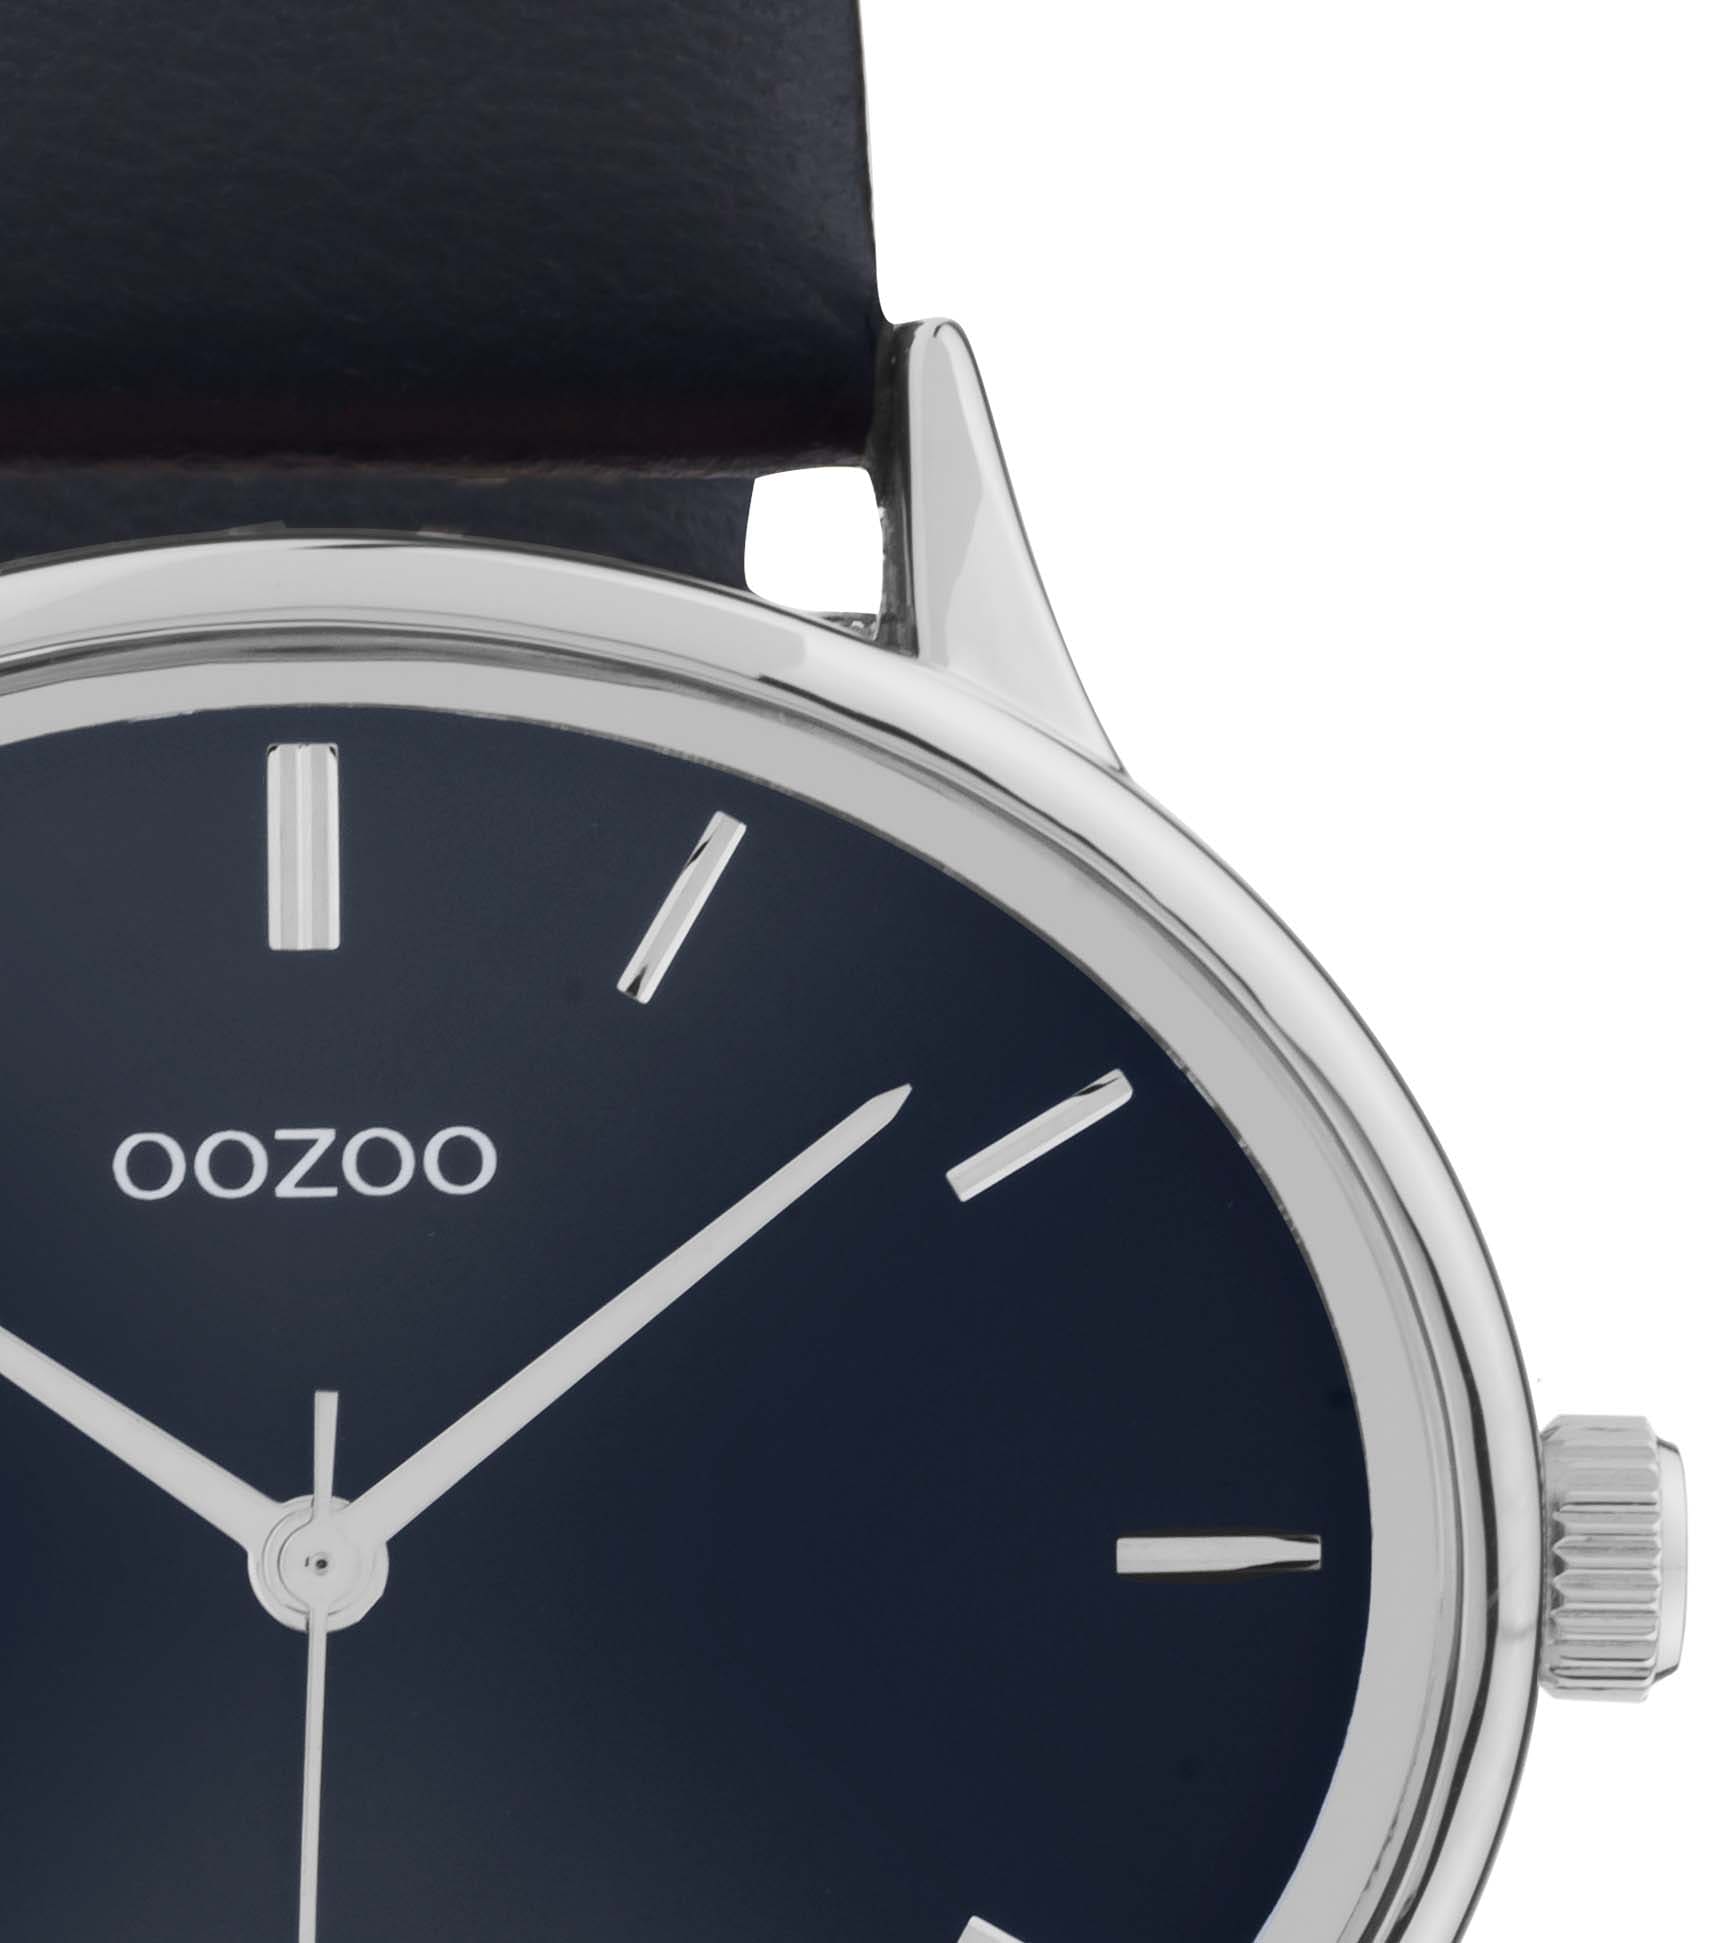 OOZOO Quarzuhr »C11051«, Armbanduhr, Damenuhr